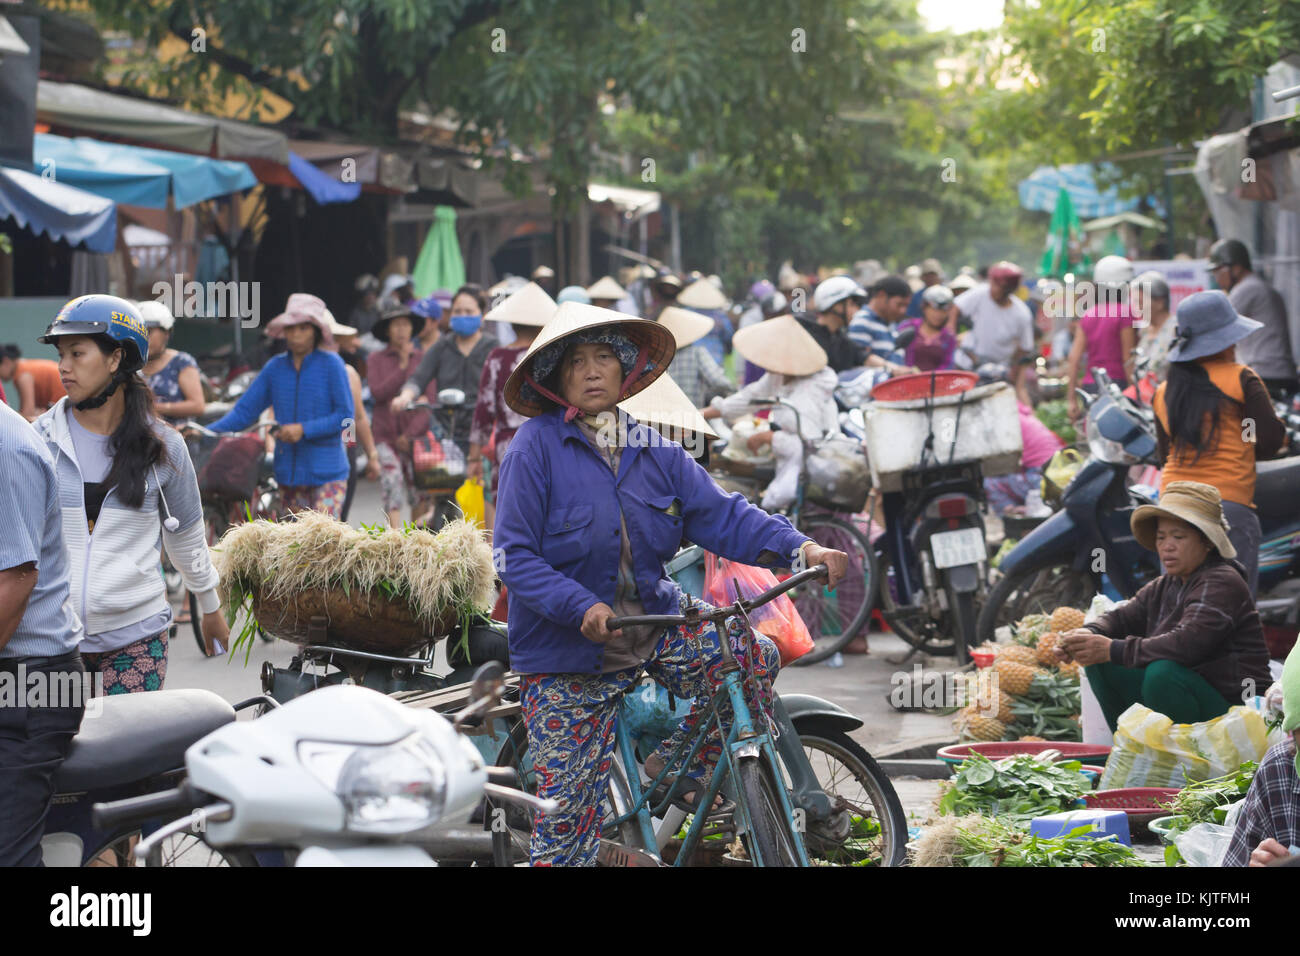 Saigon, Vietnam - June 2017: Vietnam busy morning street market, Saigon, Vietnam. Stock Photo